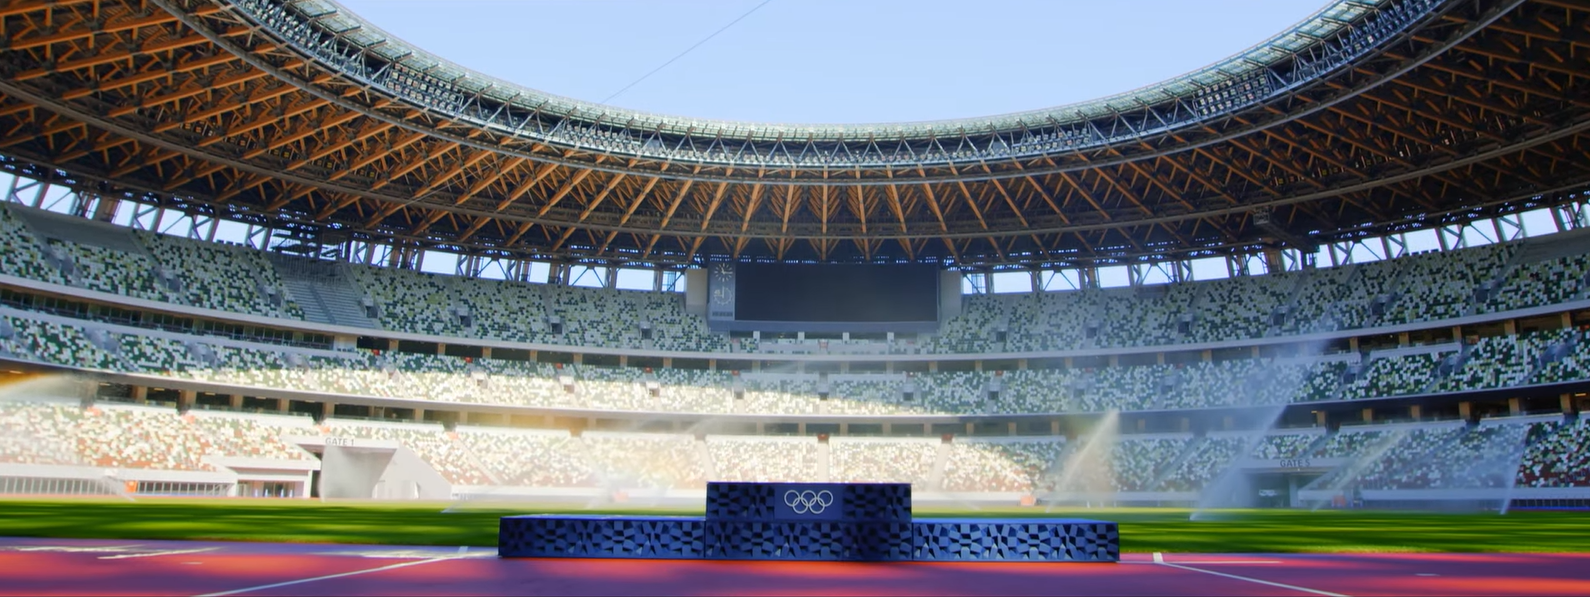 2020东京奥运会领奖台图片